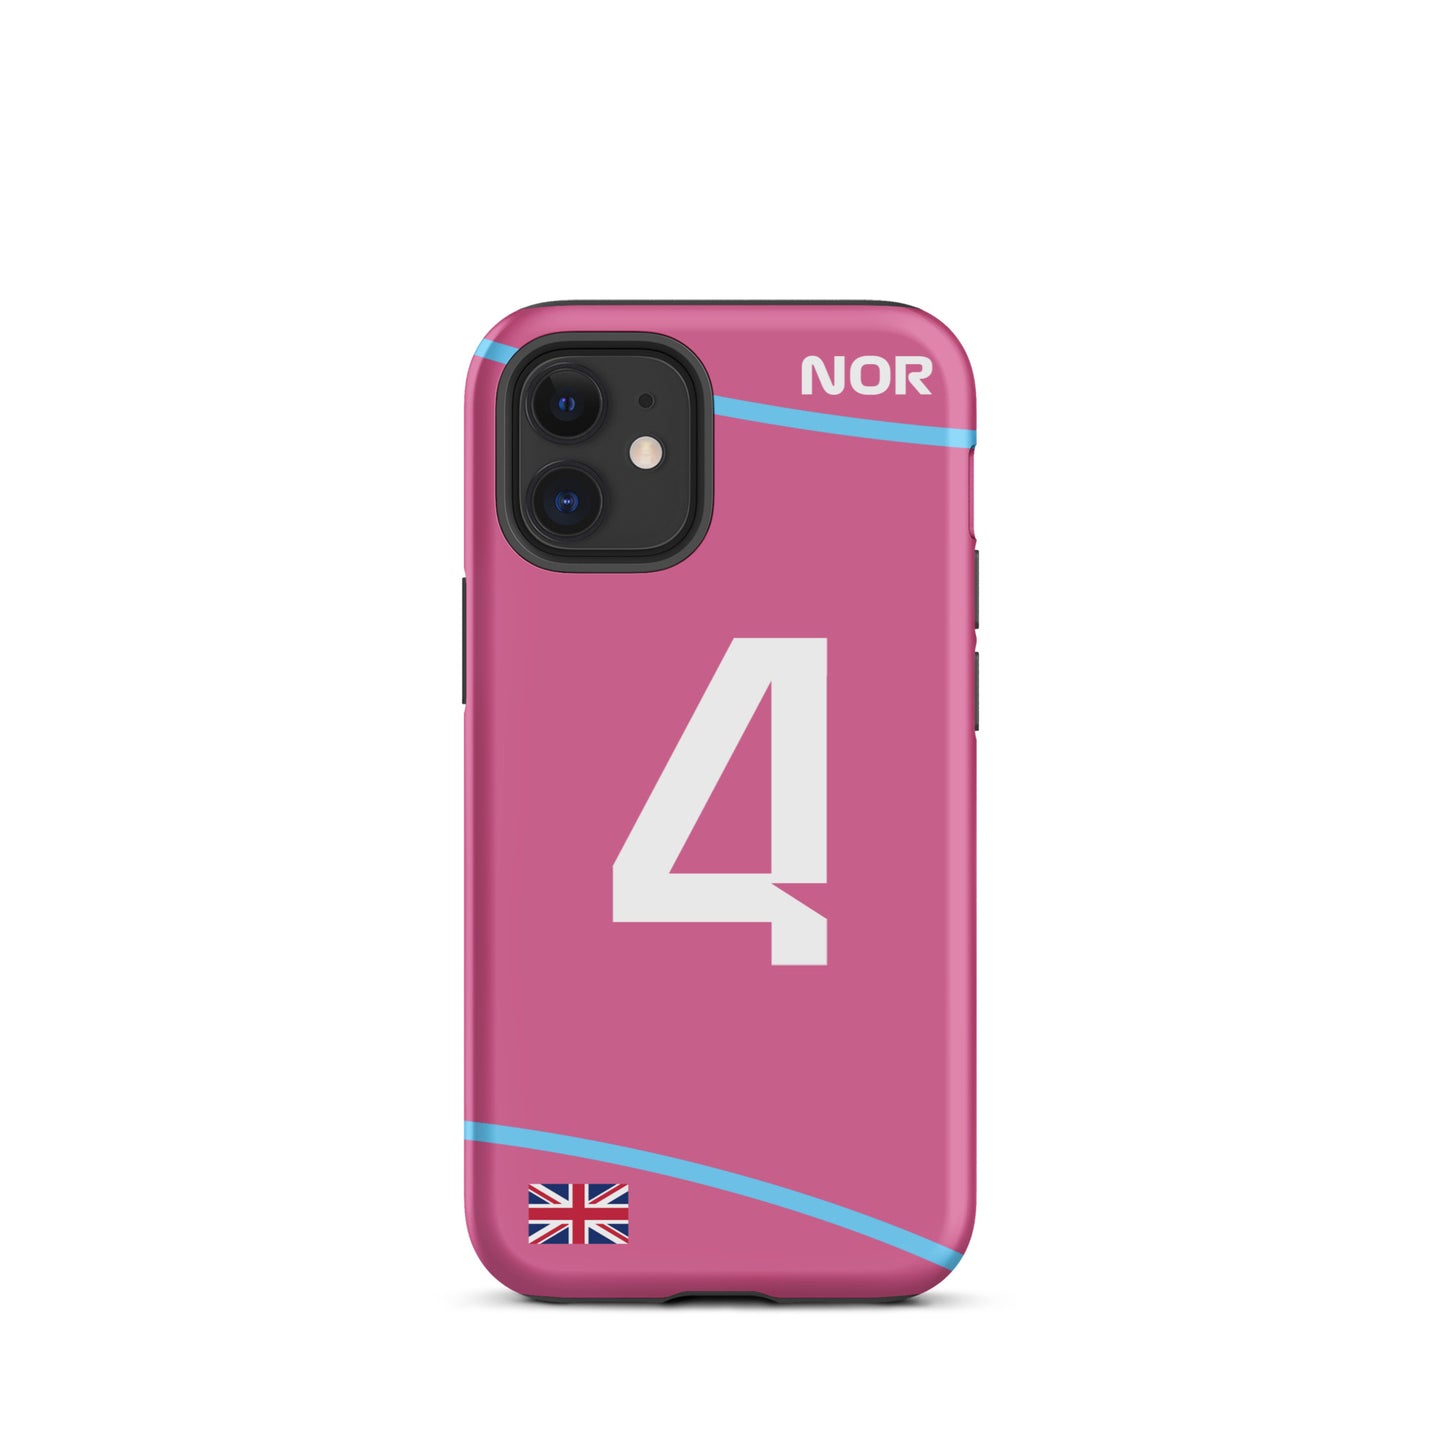 Lando Norris Miami GP Tough iPhone Case 12 mini matte case